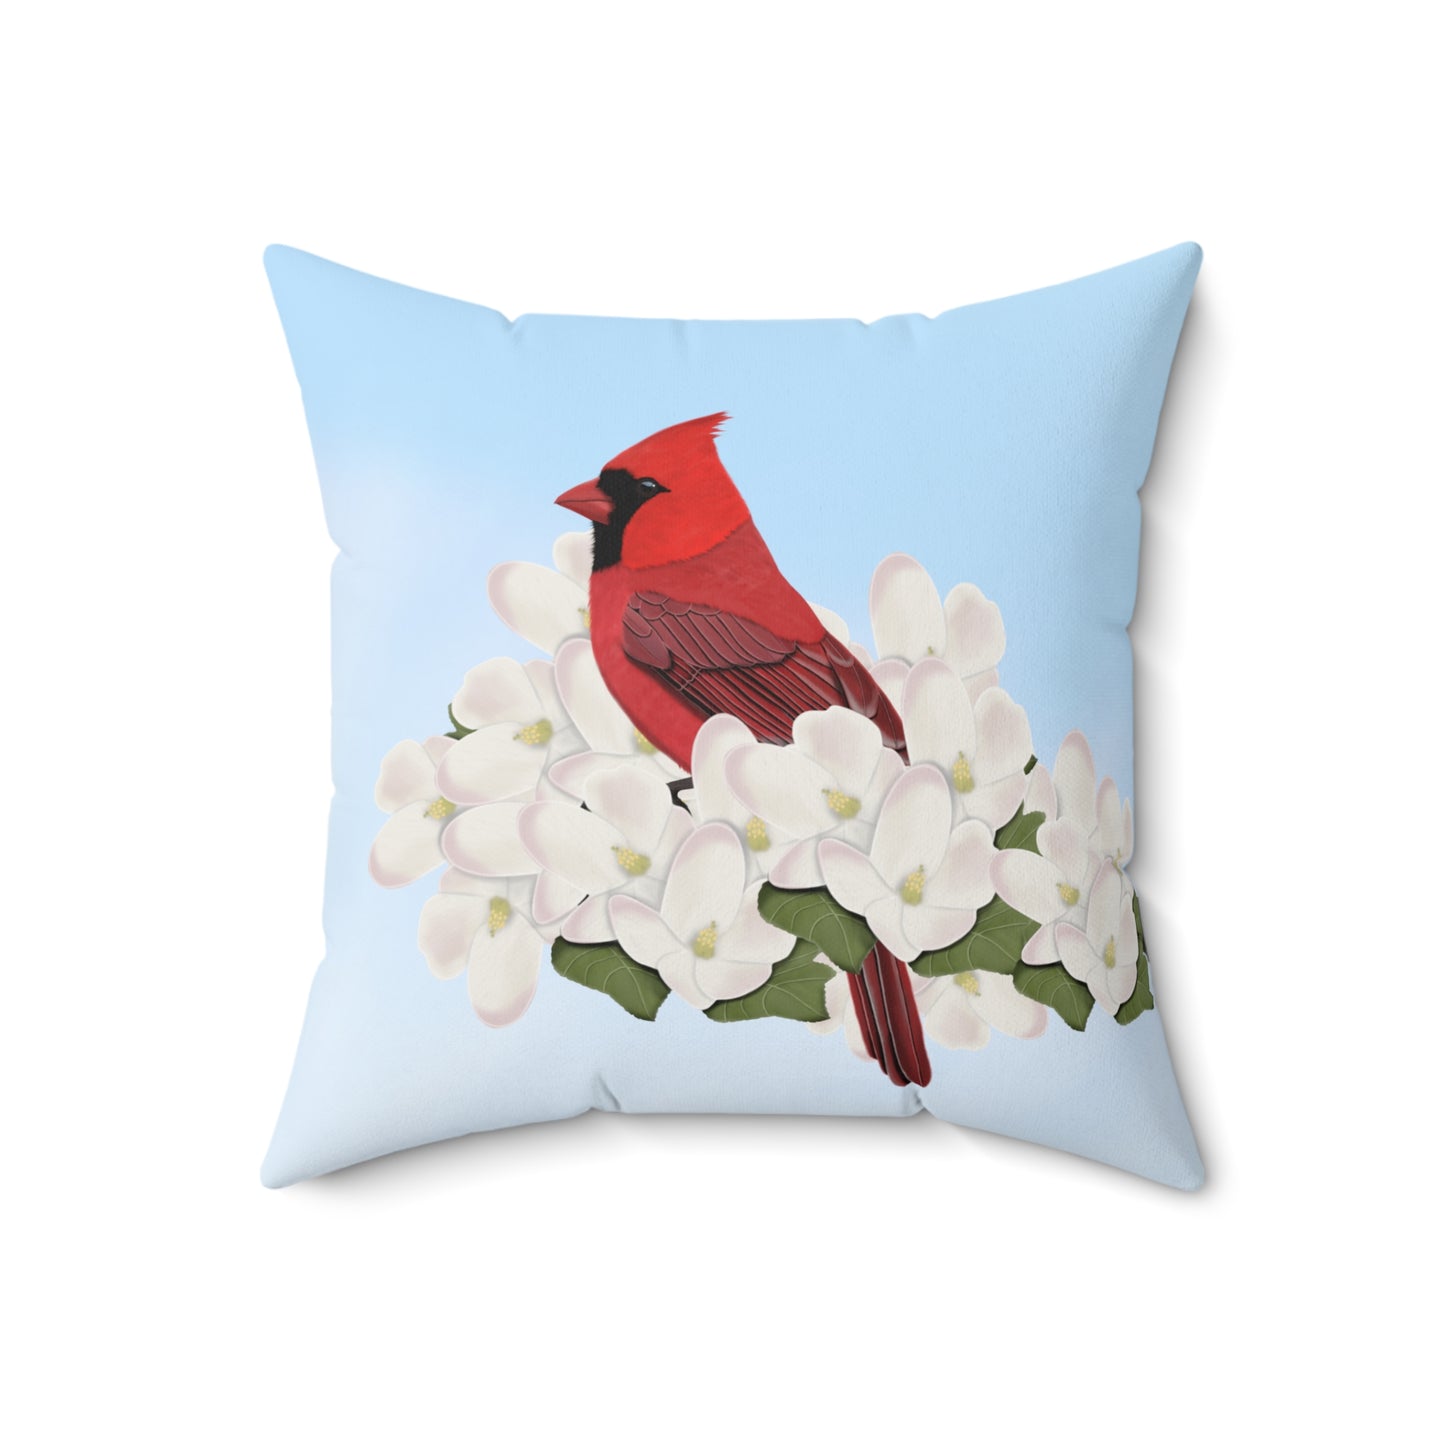 Cardinal and Apple Blossoms Bird Throw Pillow 16"x16"